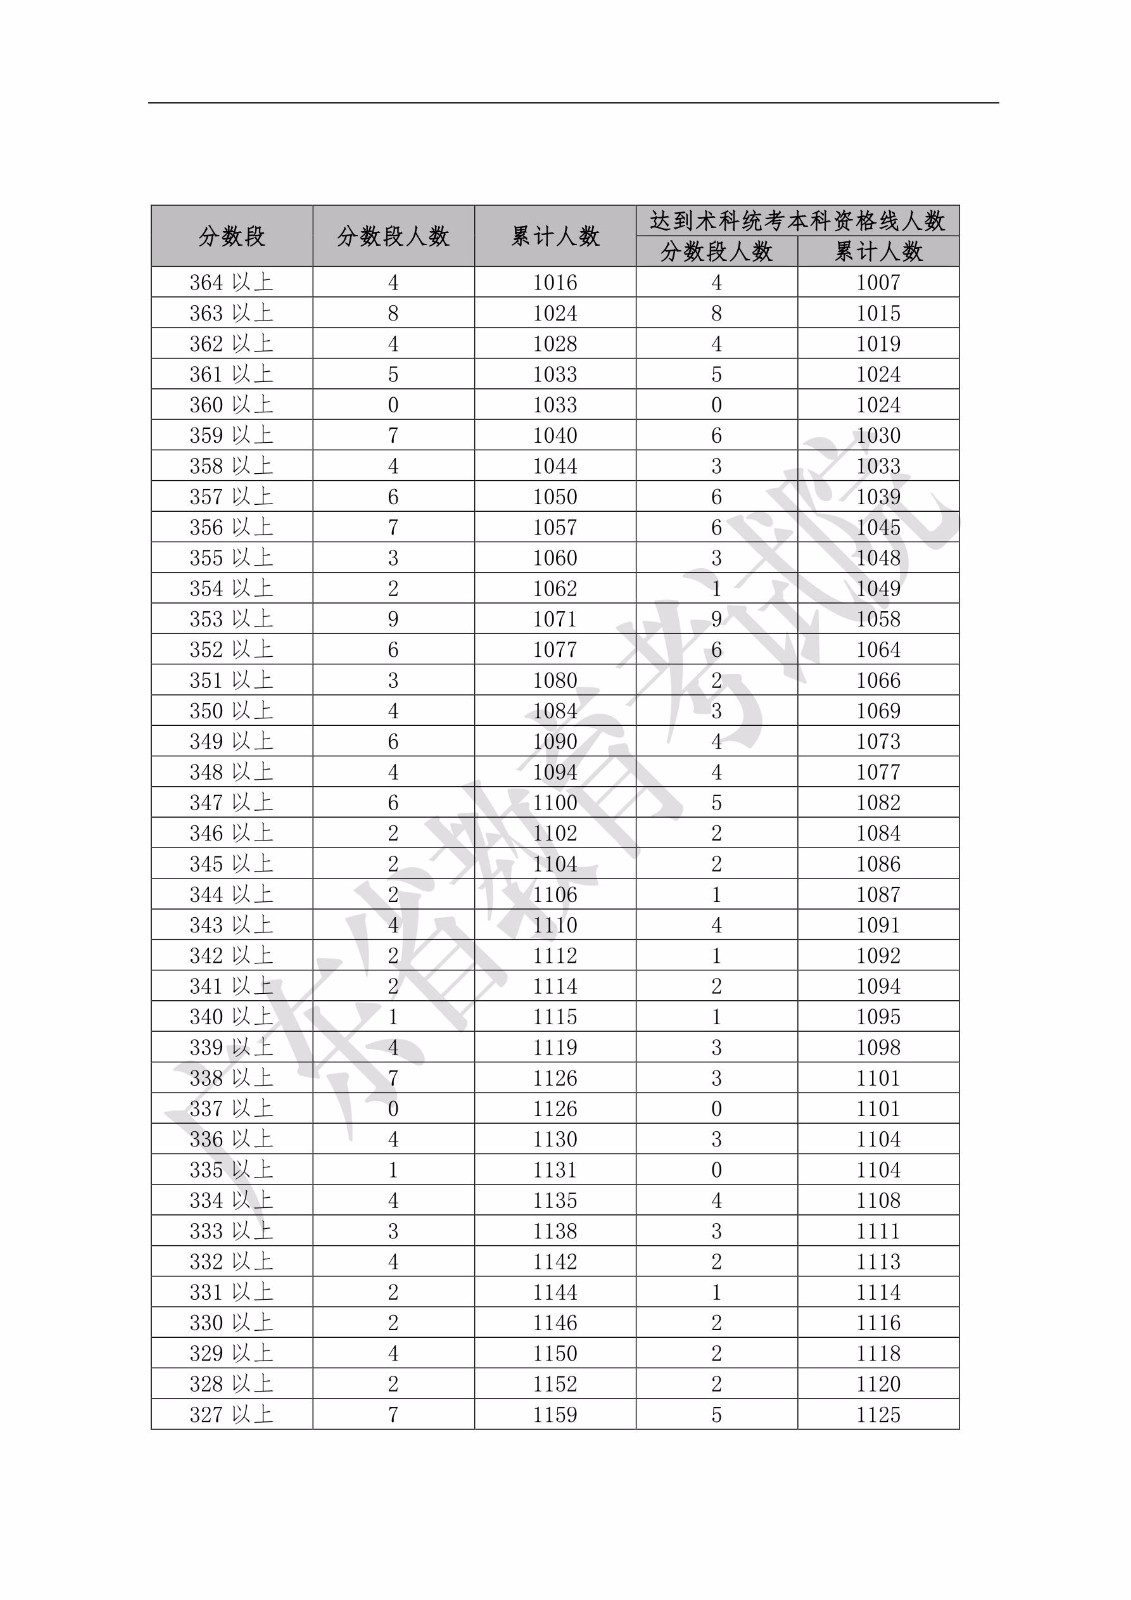 2019年广东省普通高考舞蹈类分数段统计表